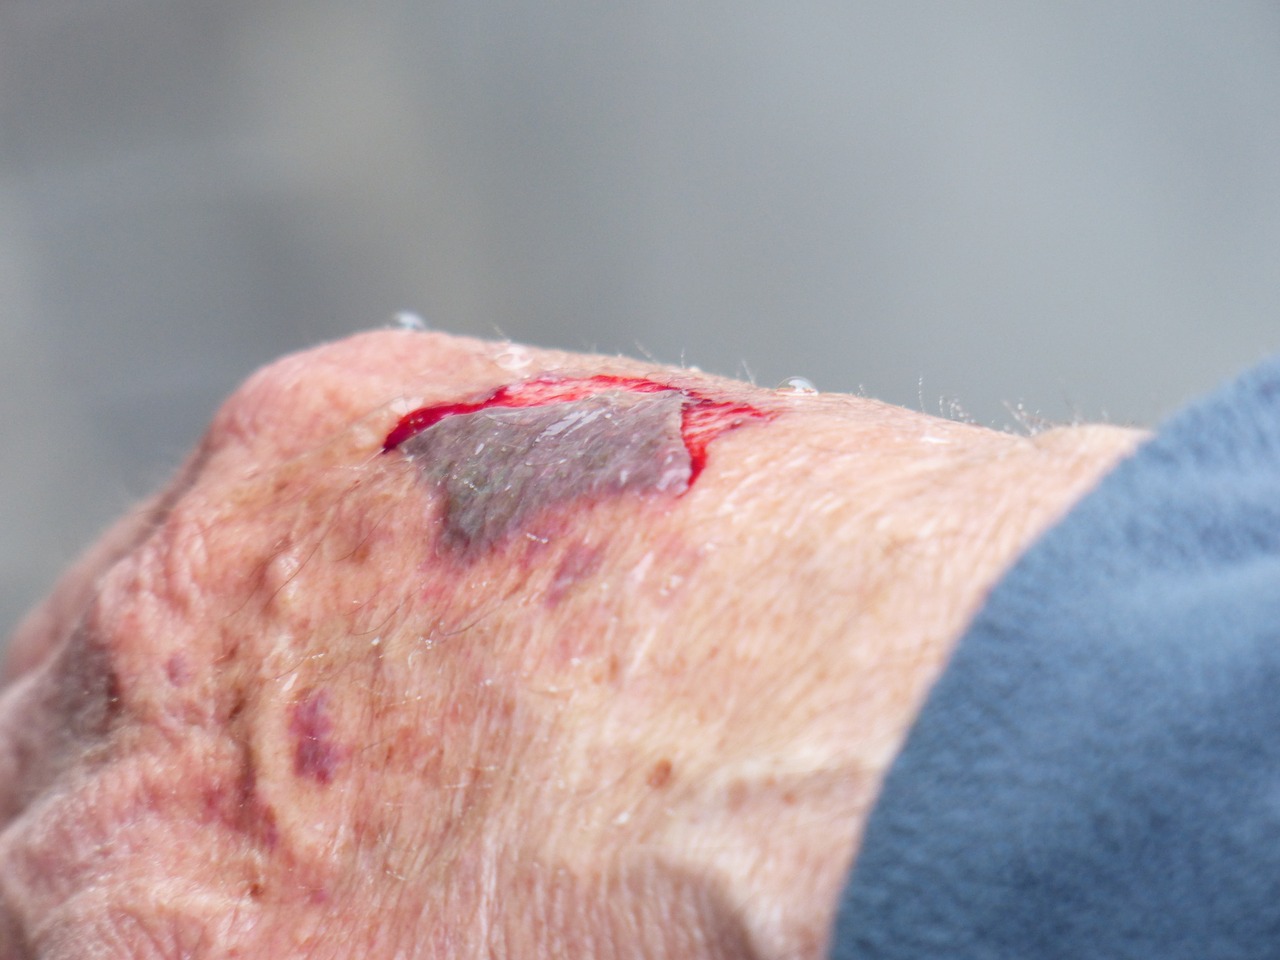 hand injury wound free photo